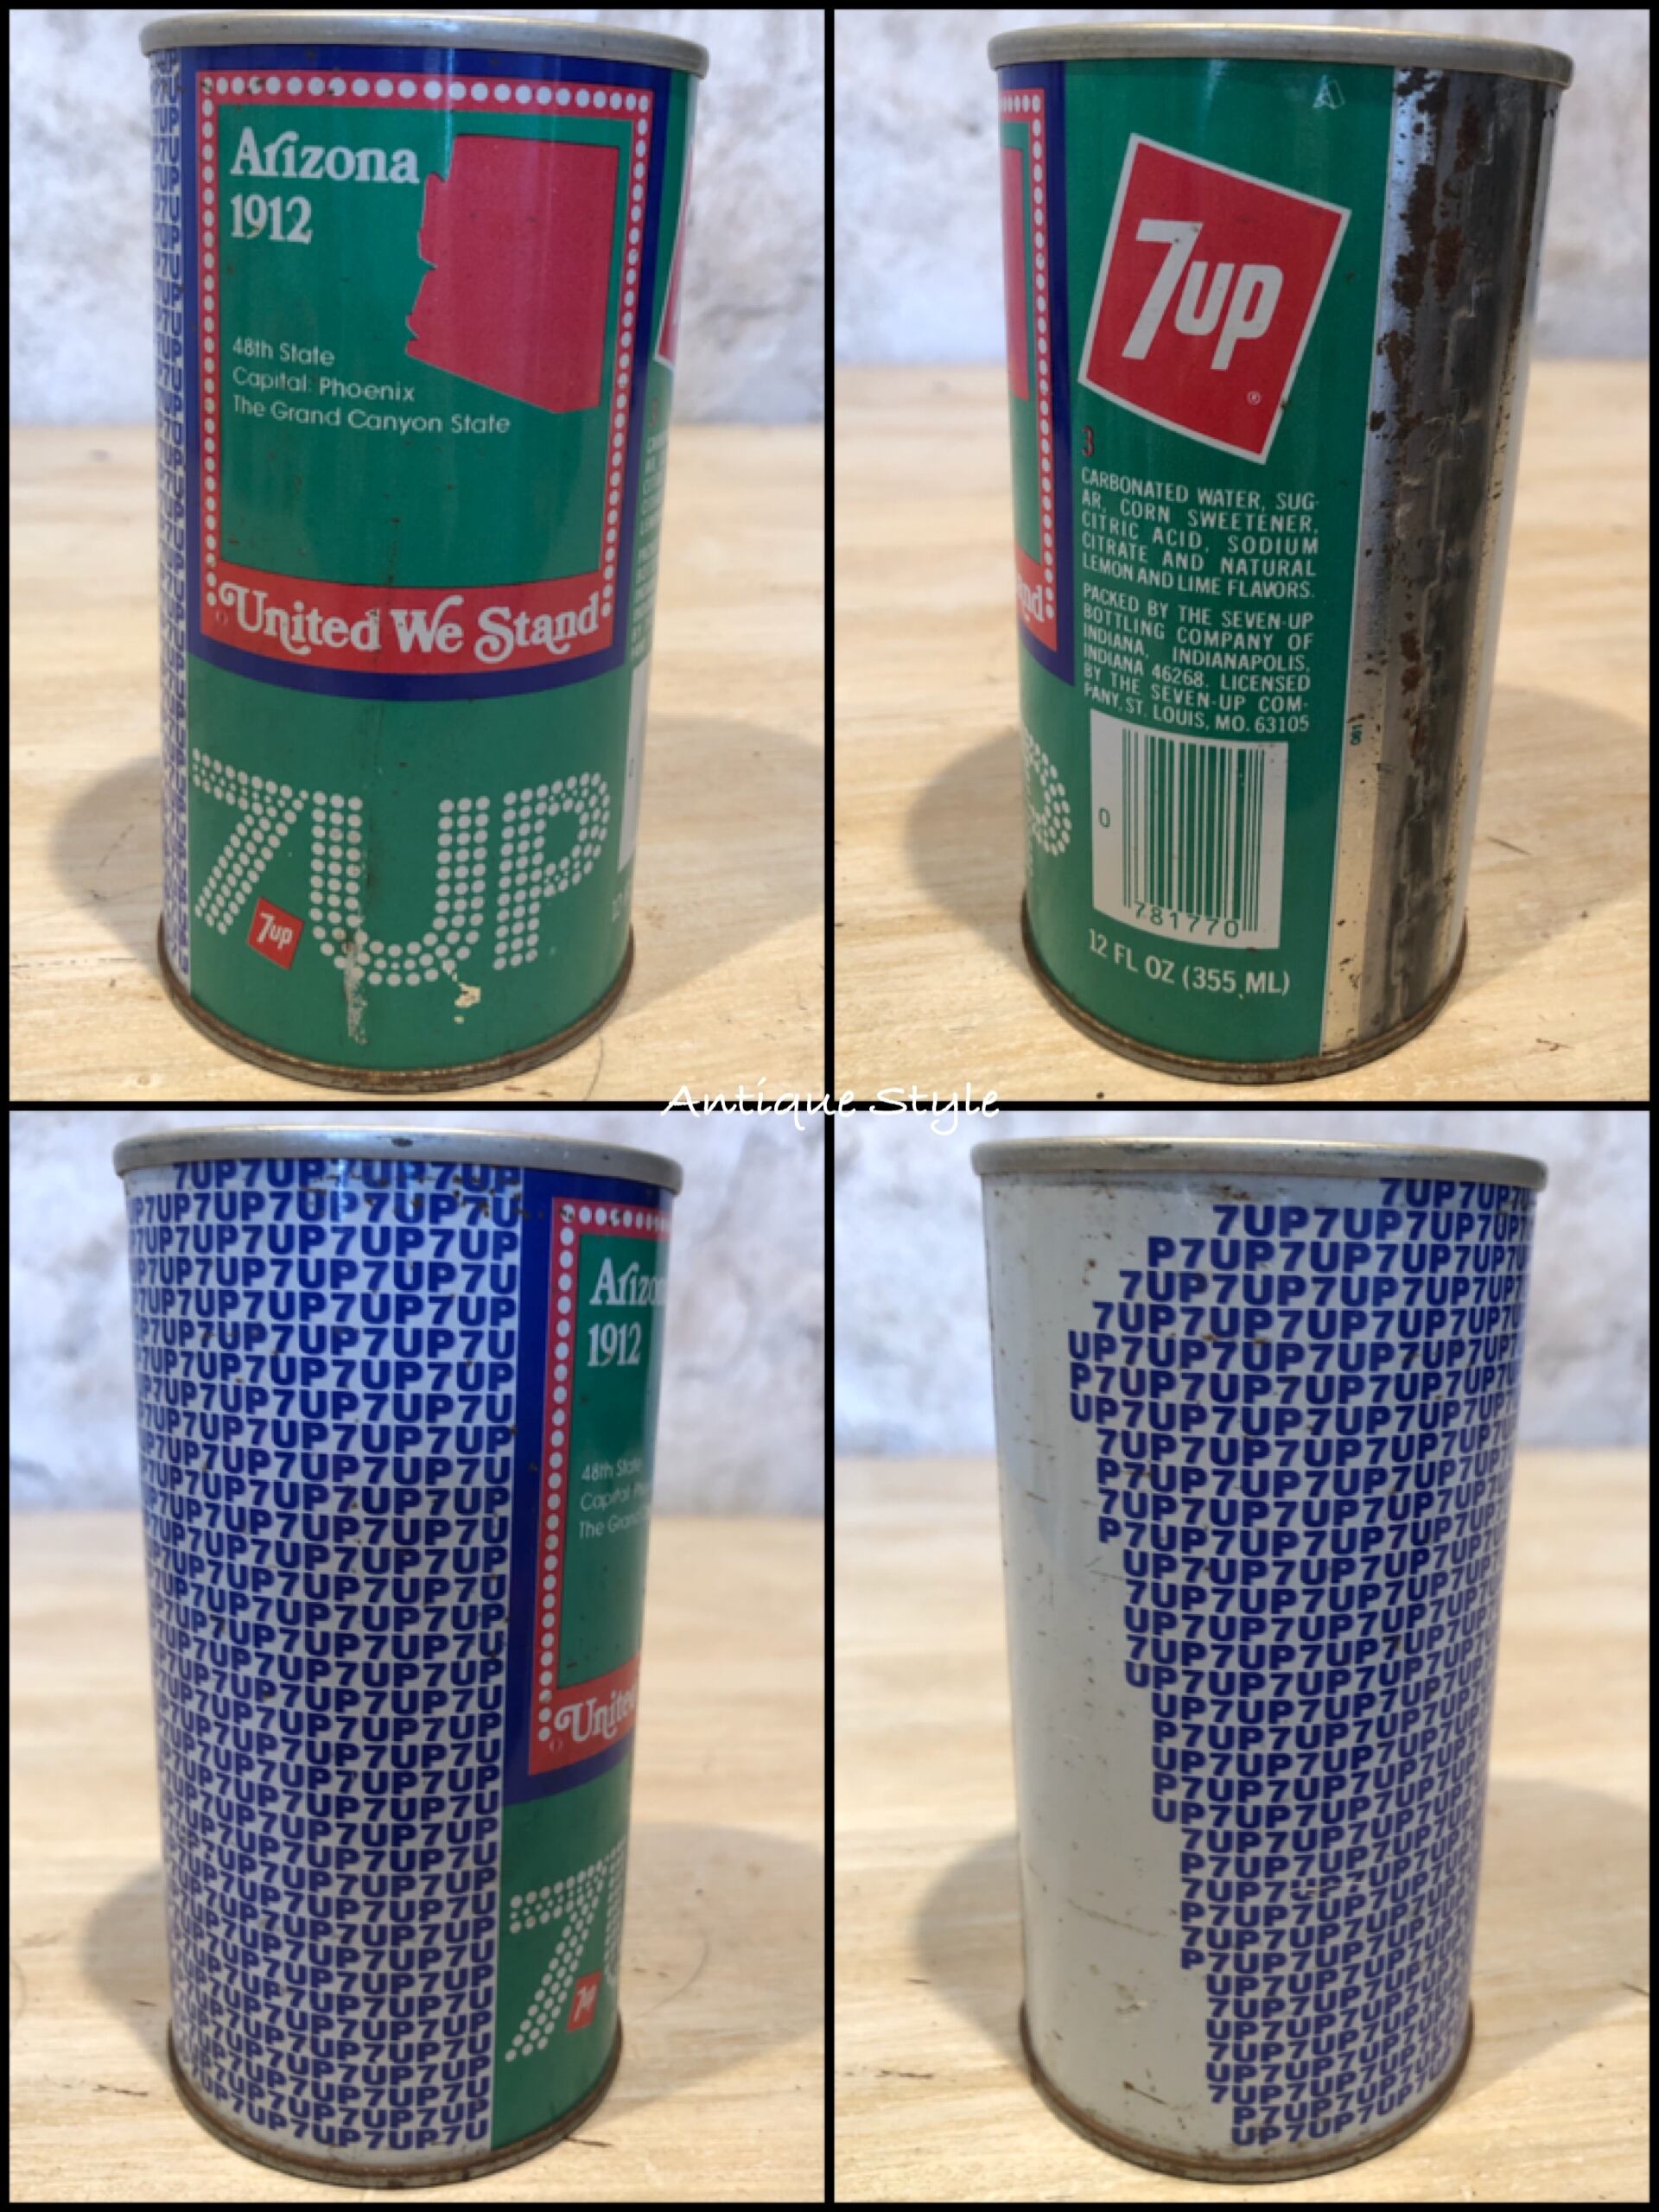  アメリカ アリゾナ州 ライセンスプレート ナンバープレート 缶